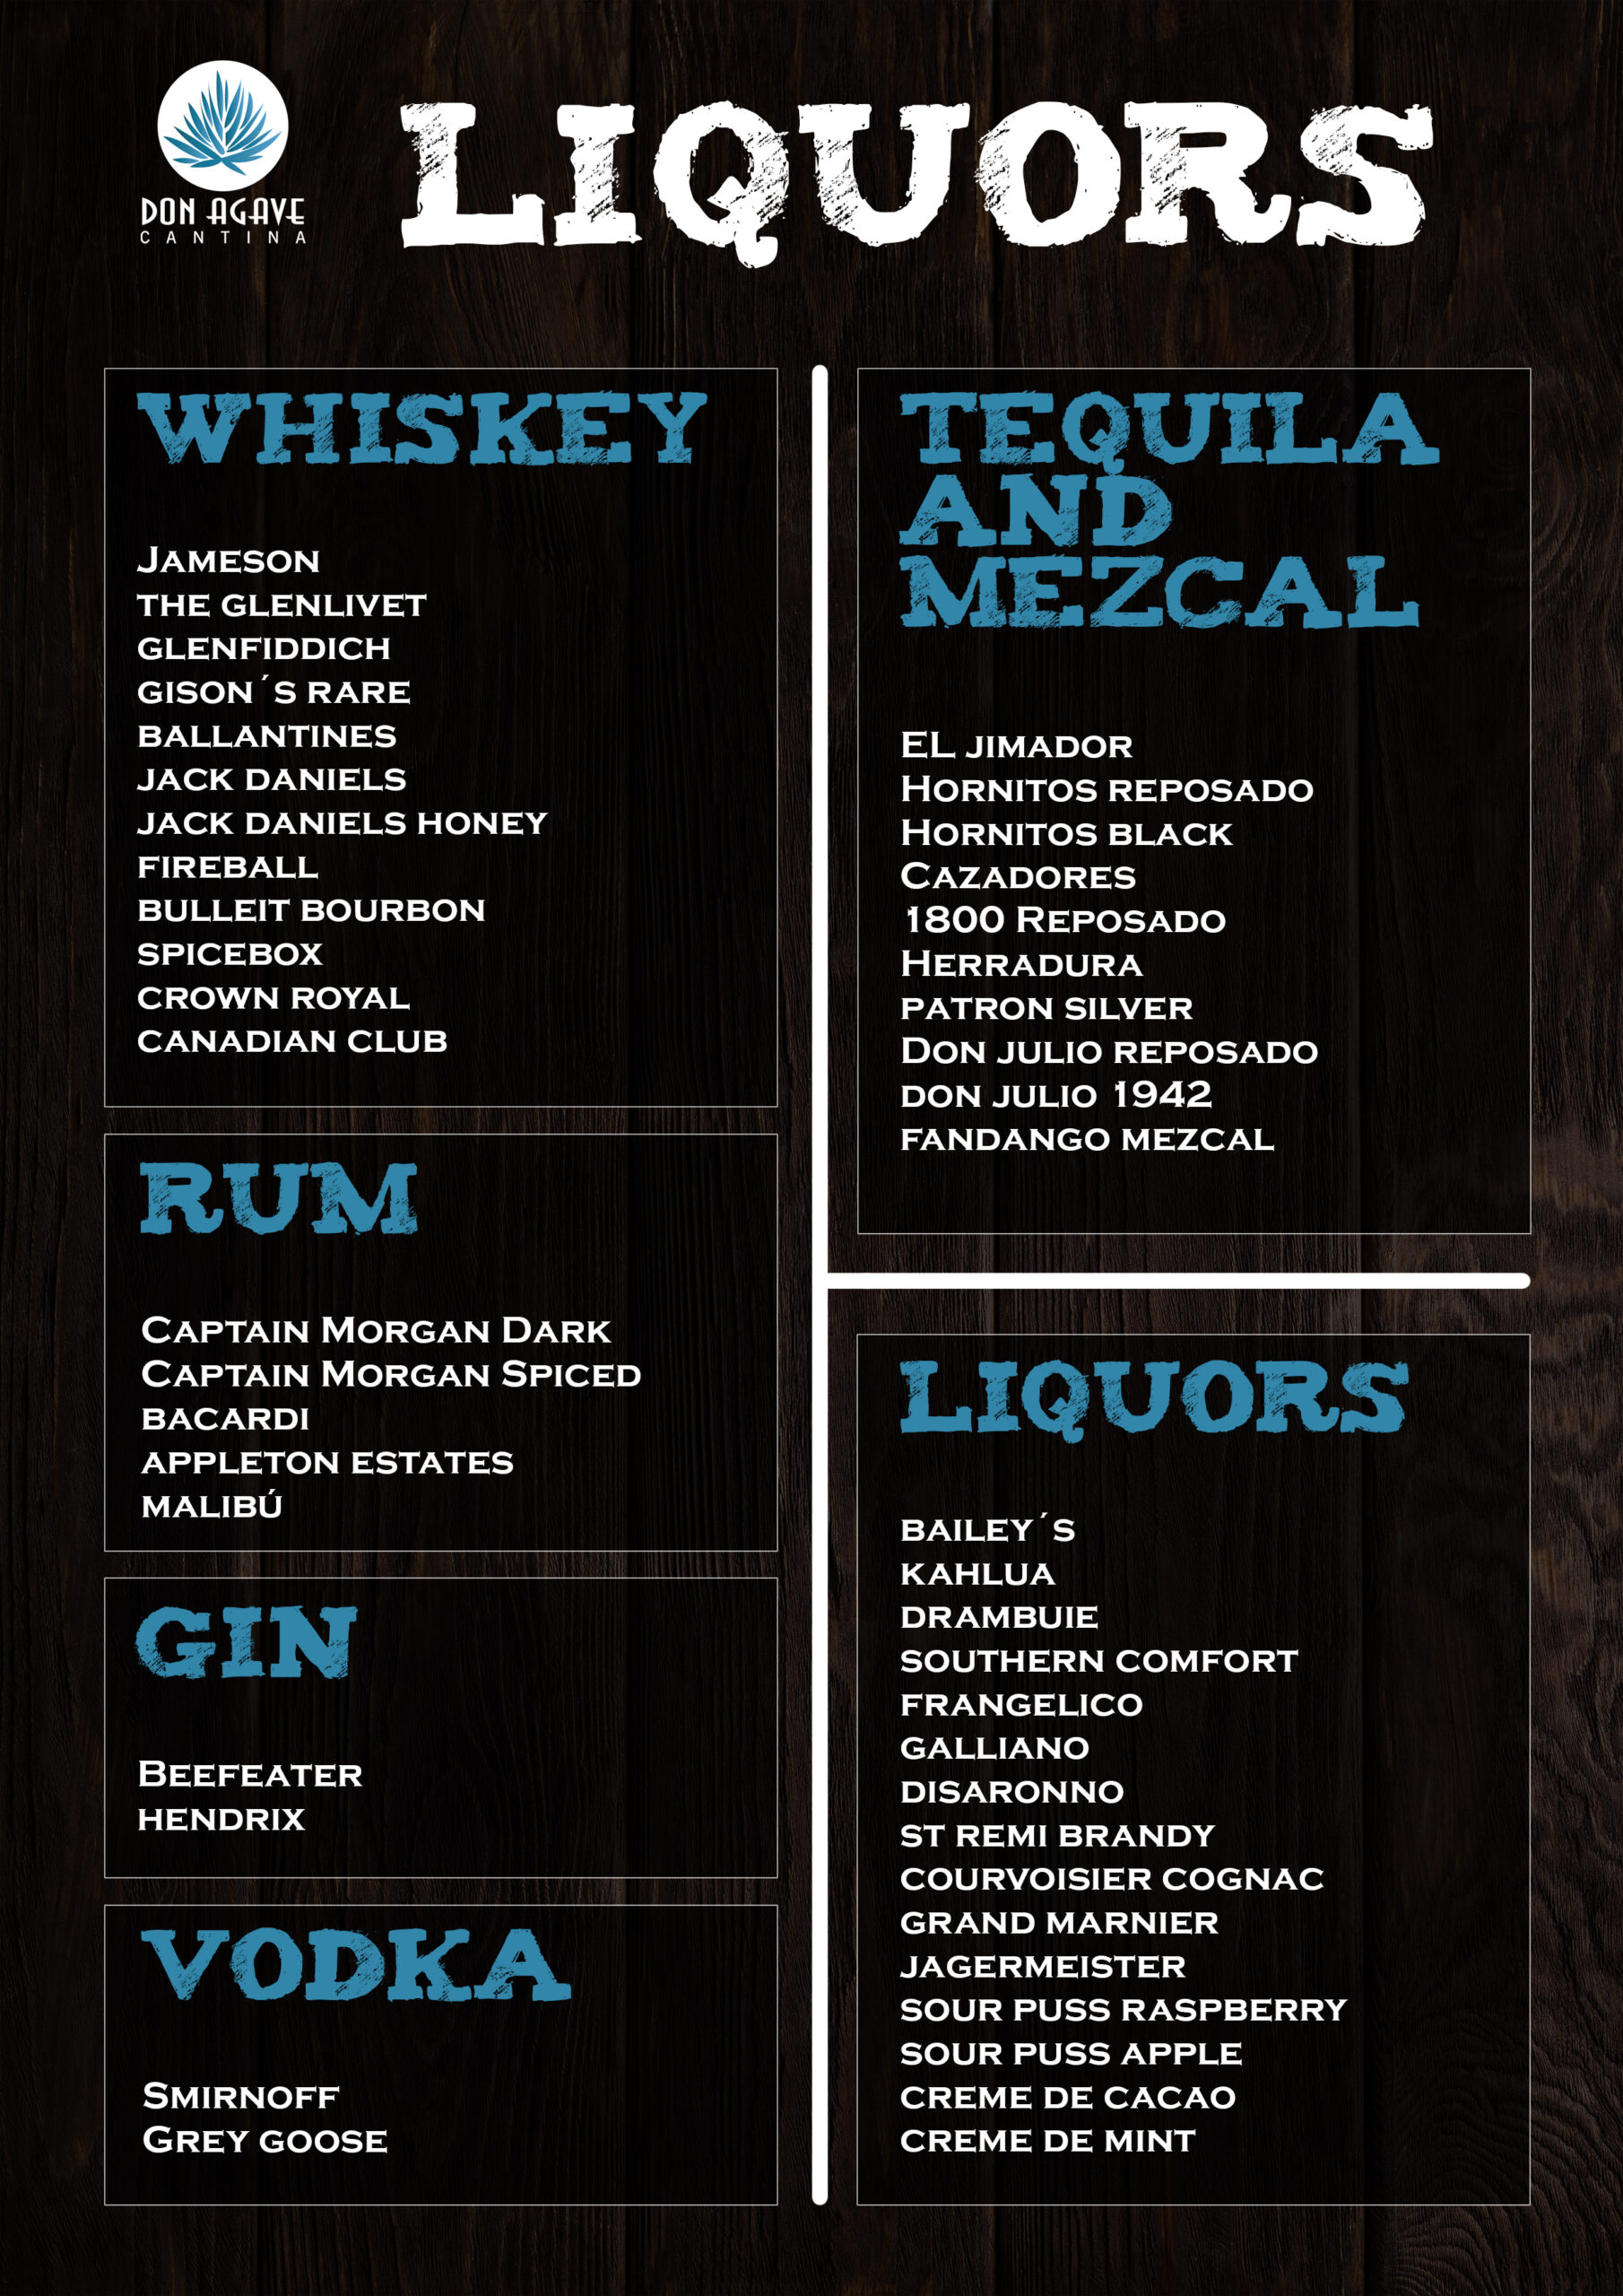 Liquors menu